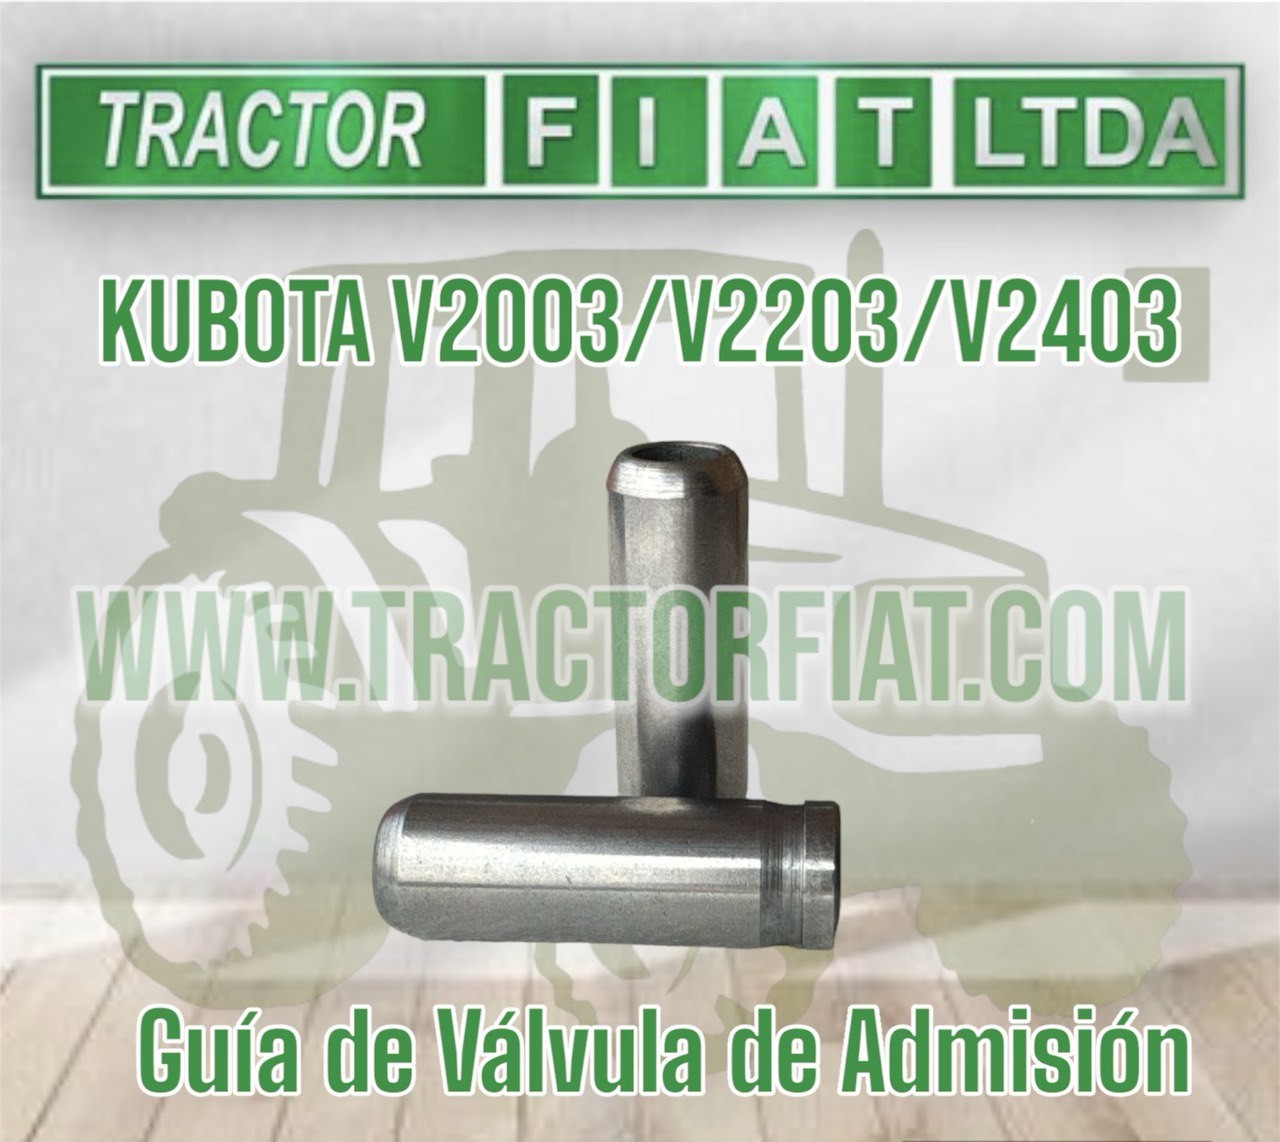 GUIA DE ADMISION MOTOR KUBOTA V2403/ V2203 /V2003